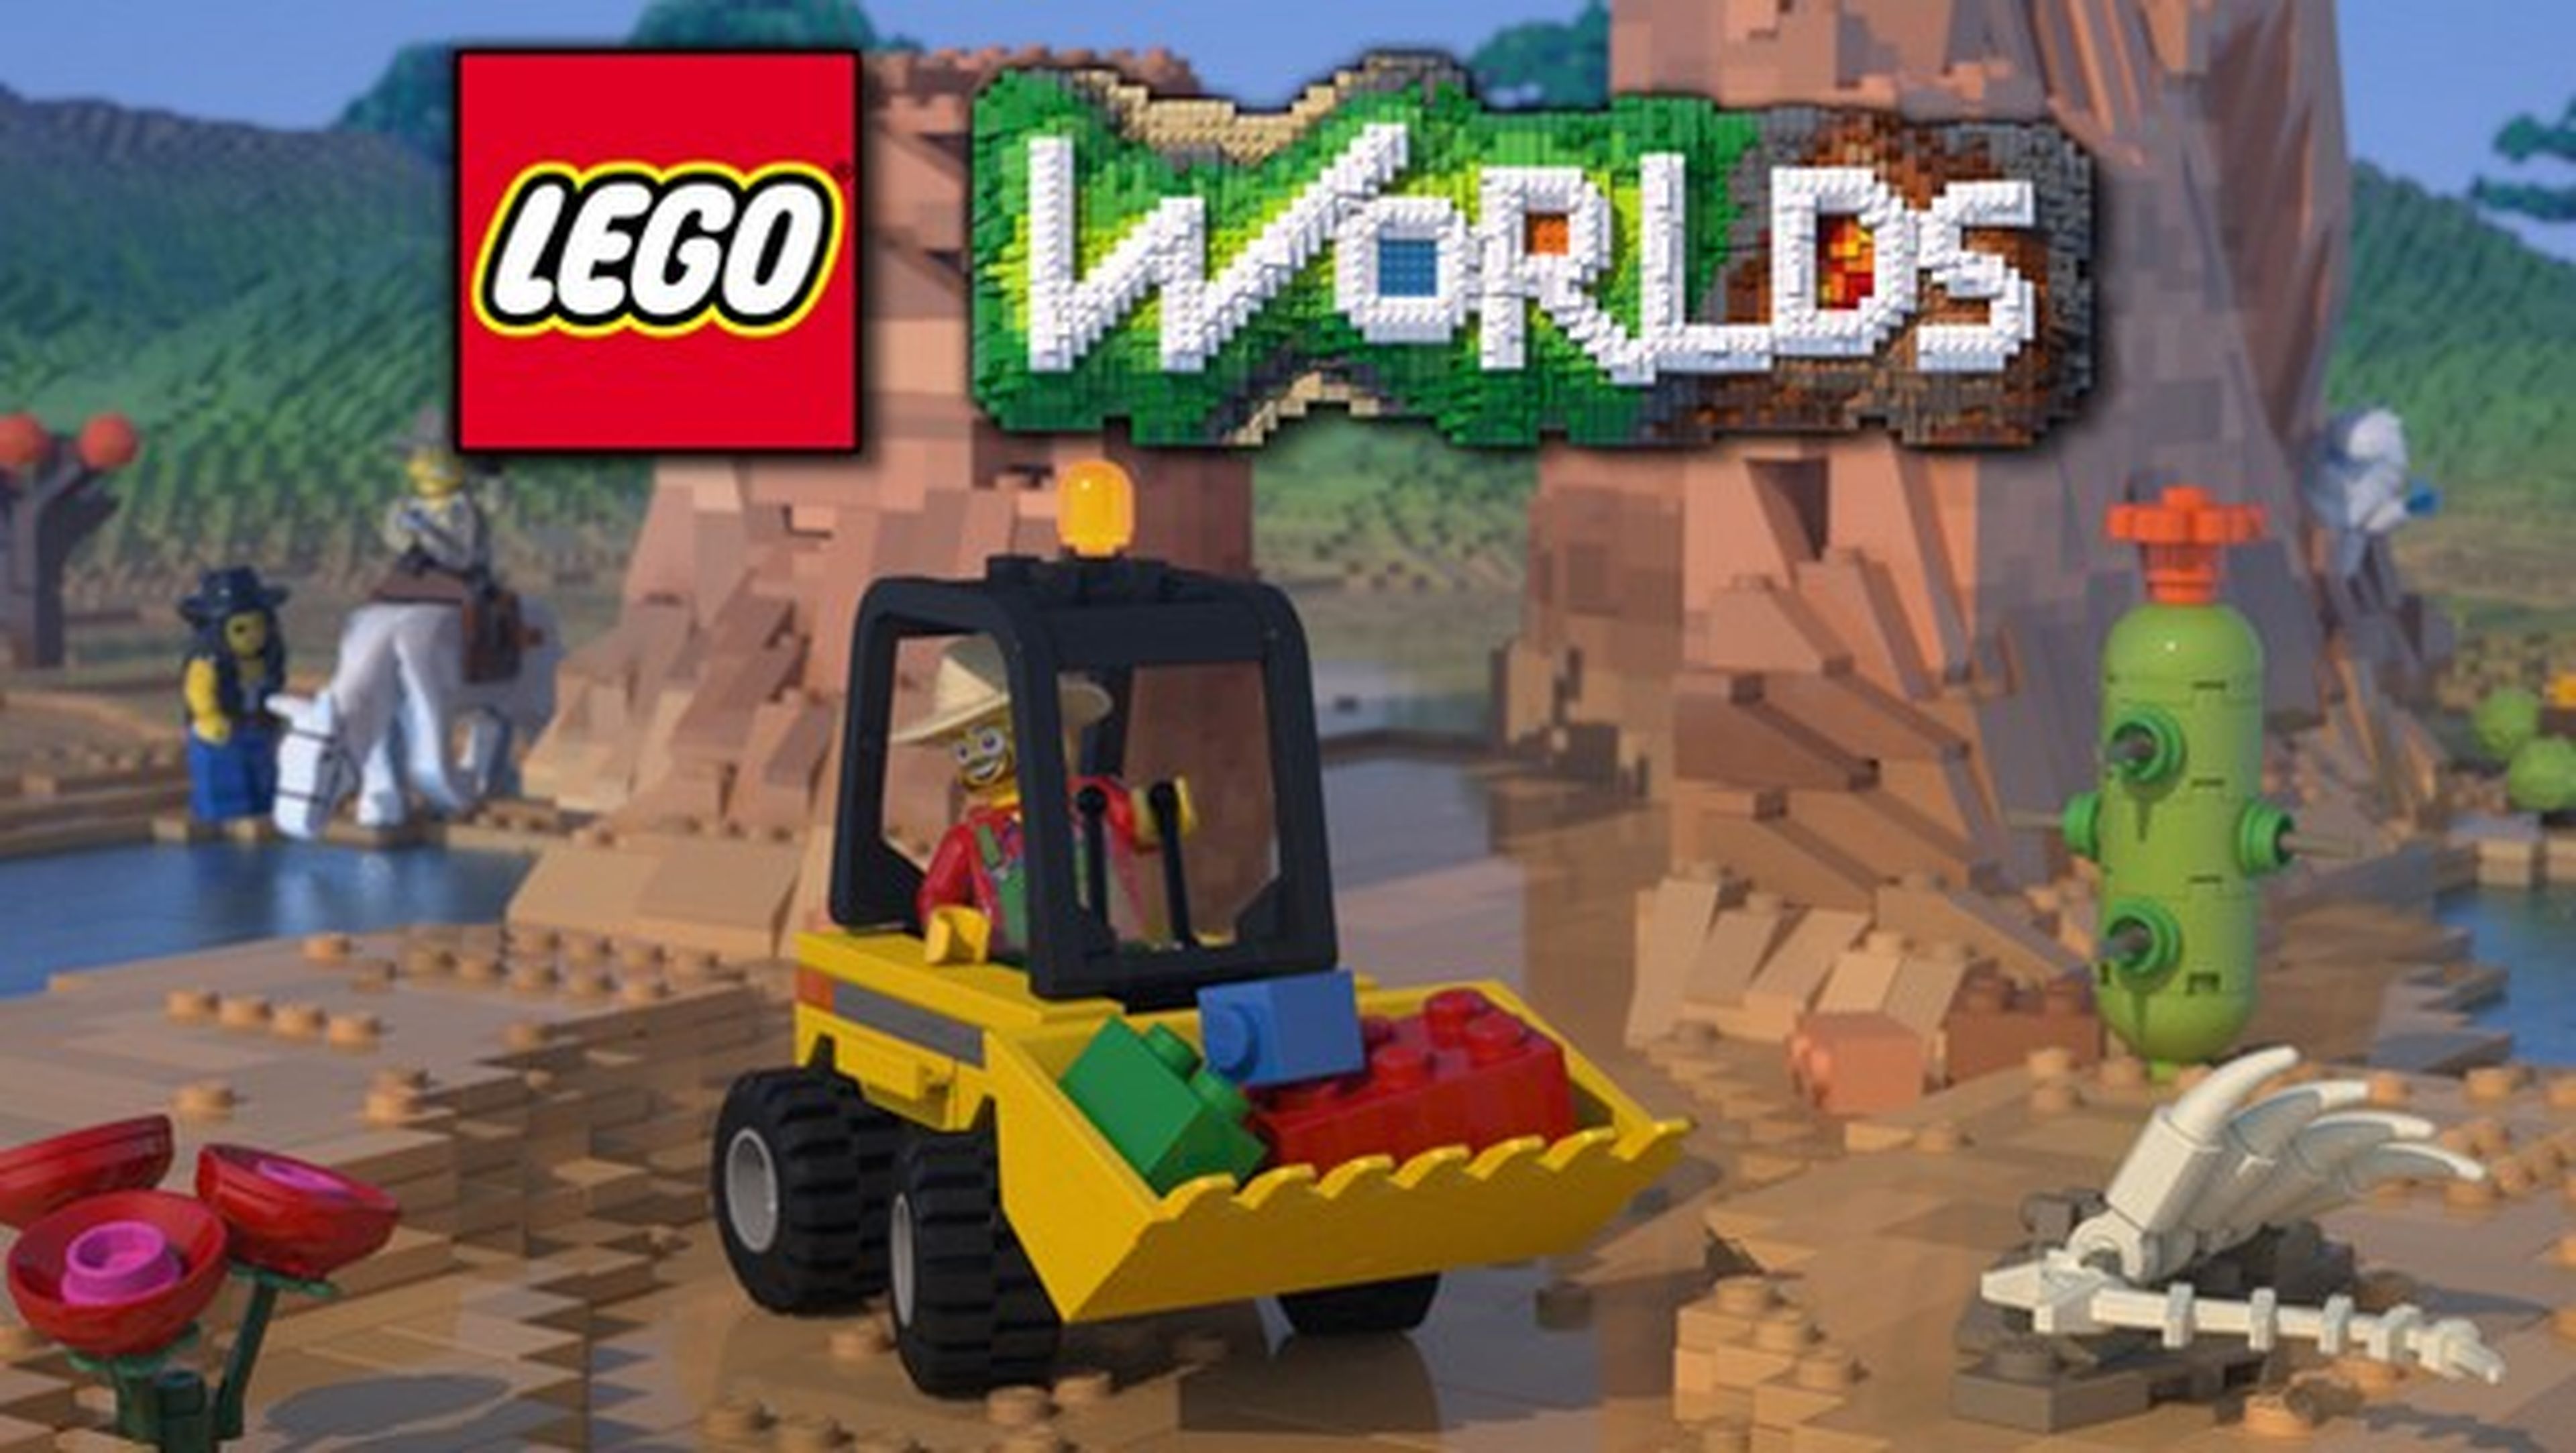 Lego planta cara a Minecraft con Lego Worlds.